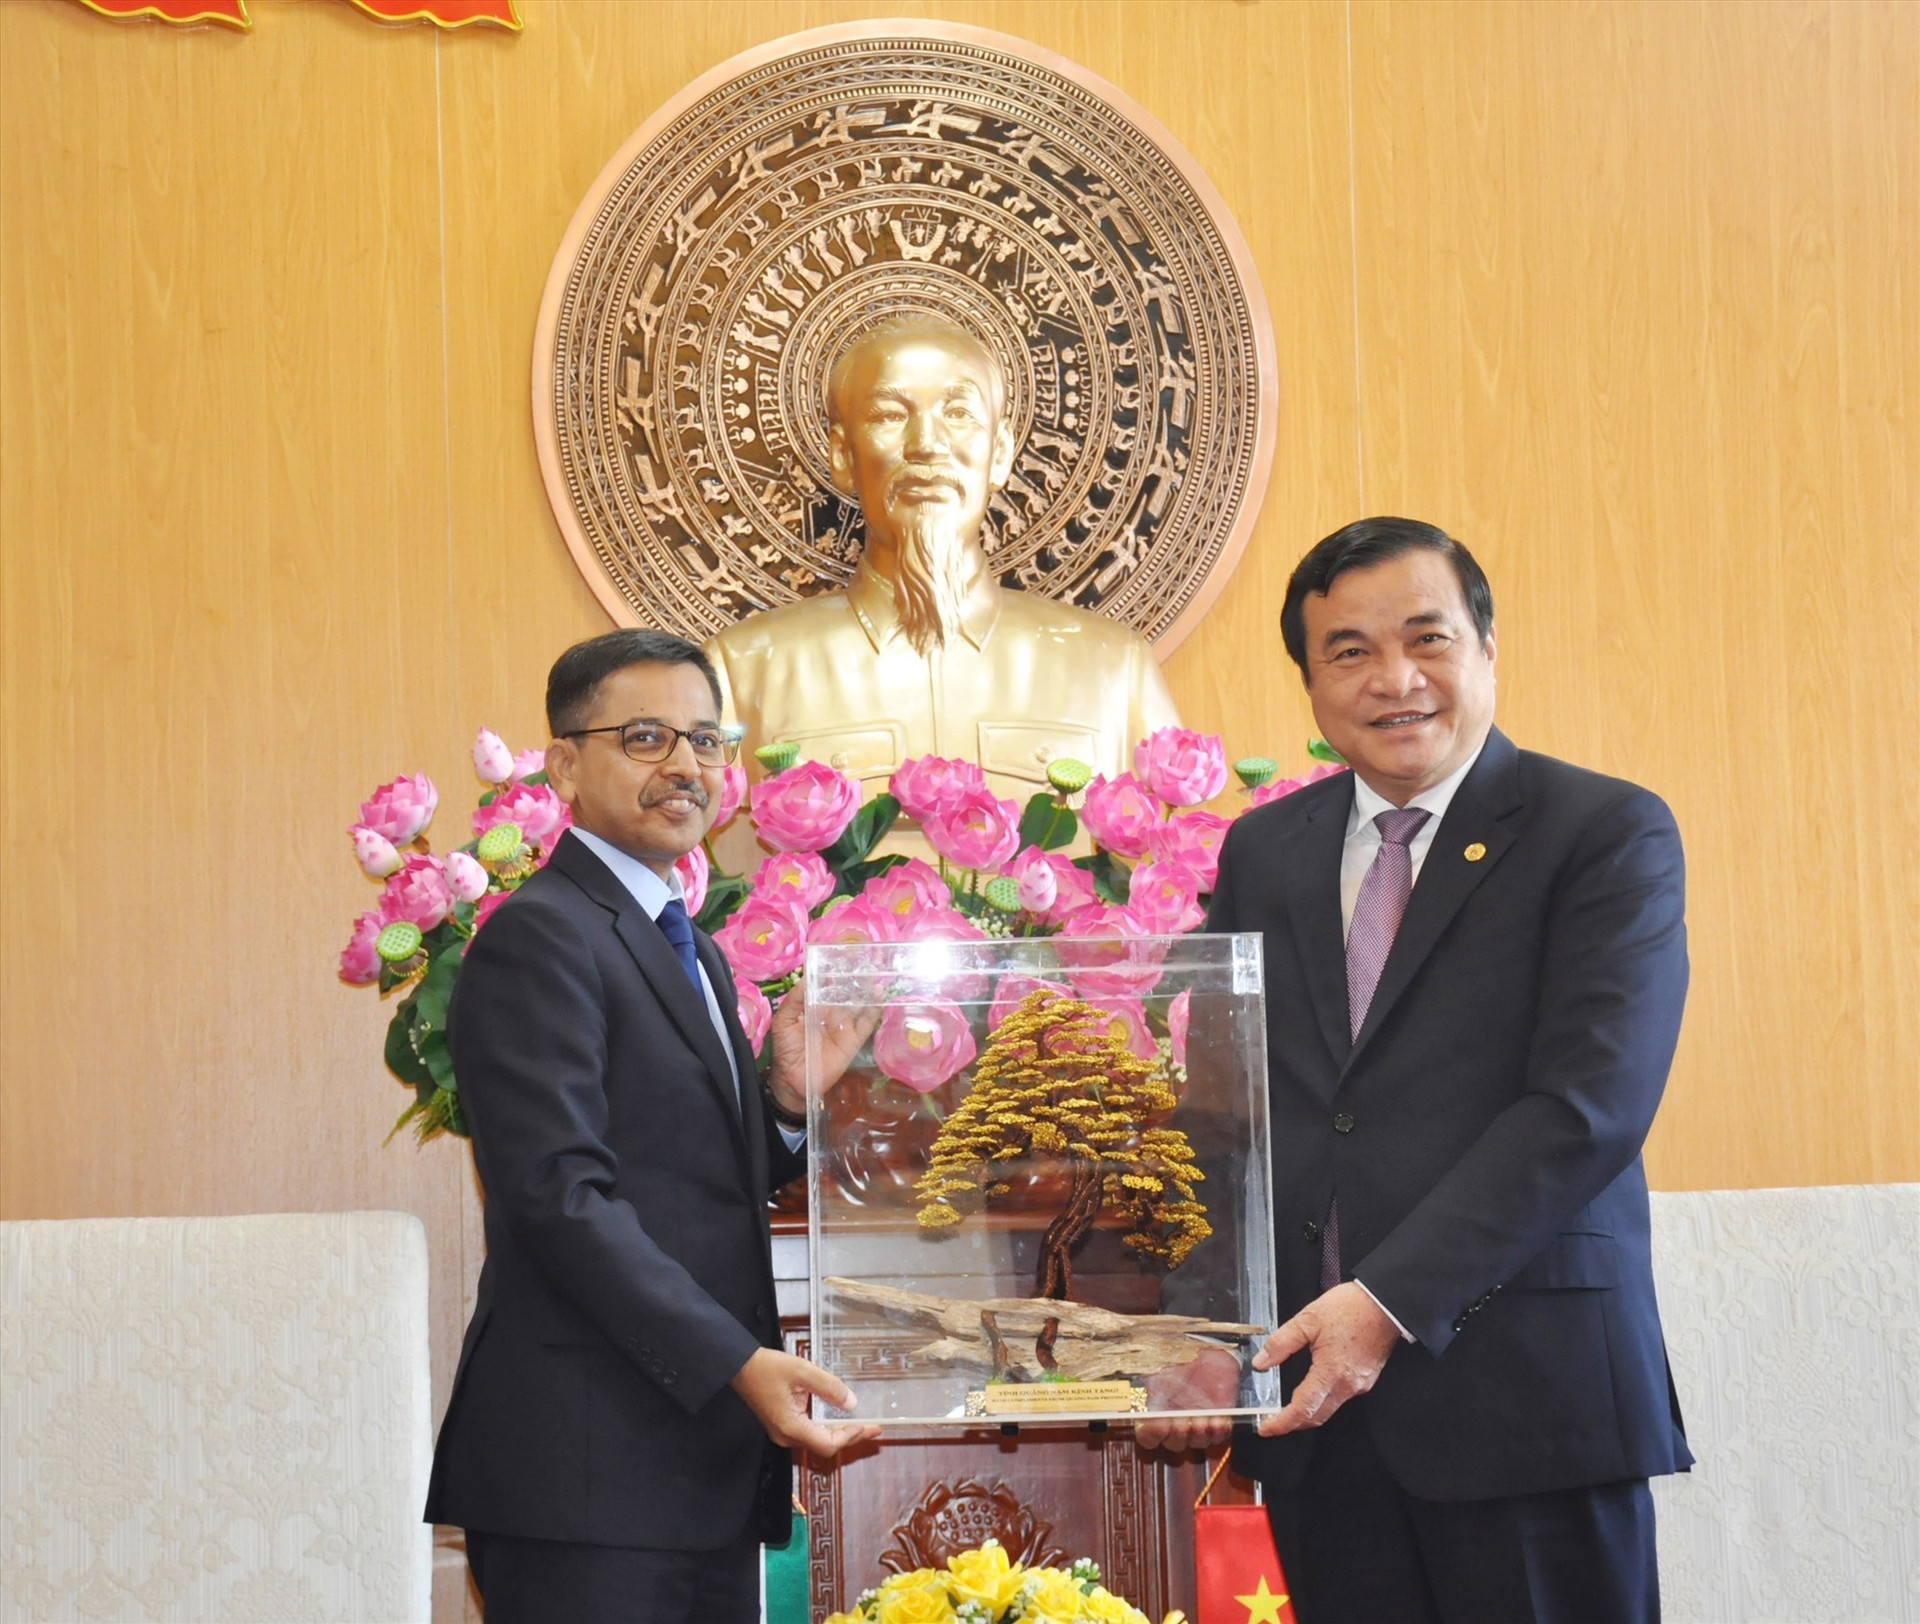 Secretary Cuong gives a gift to Indian Ambassador Pranay Verma